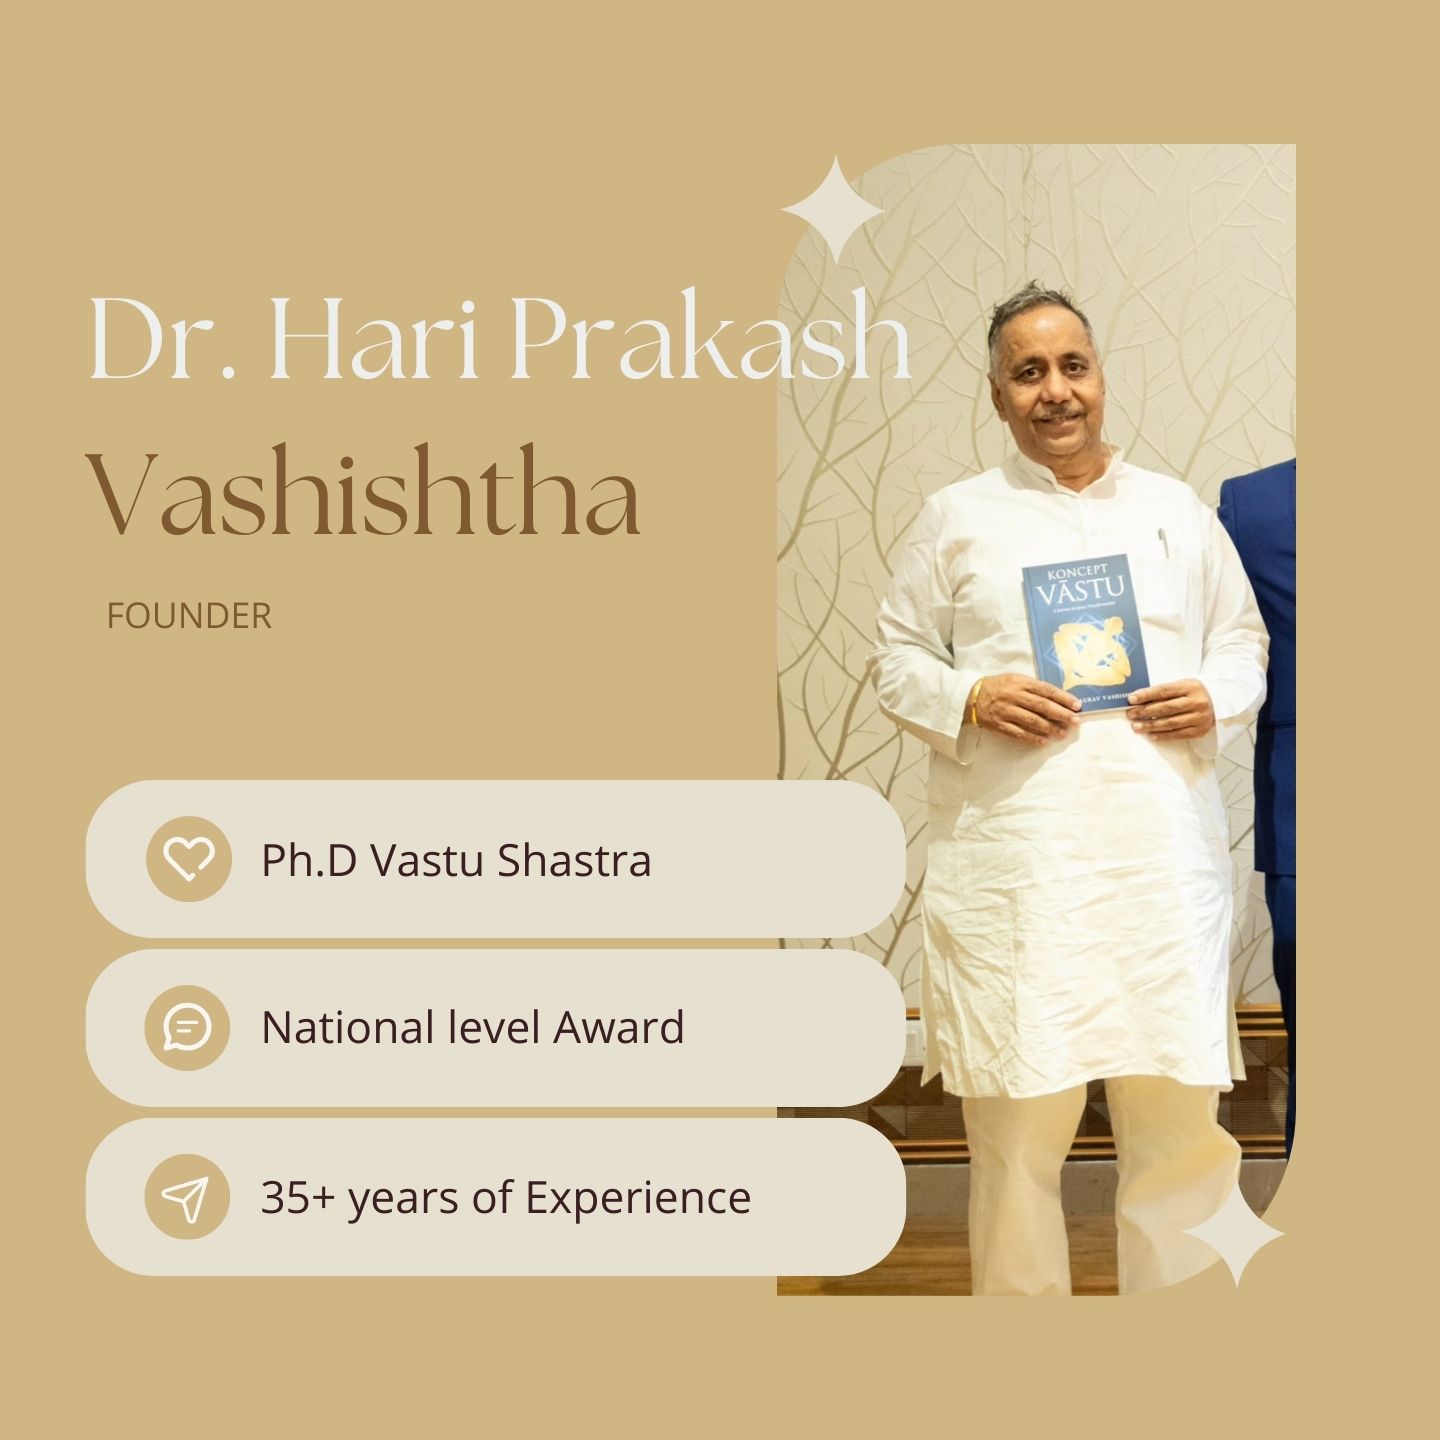 Dr. Hari Prakash Vashishtha